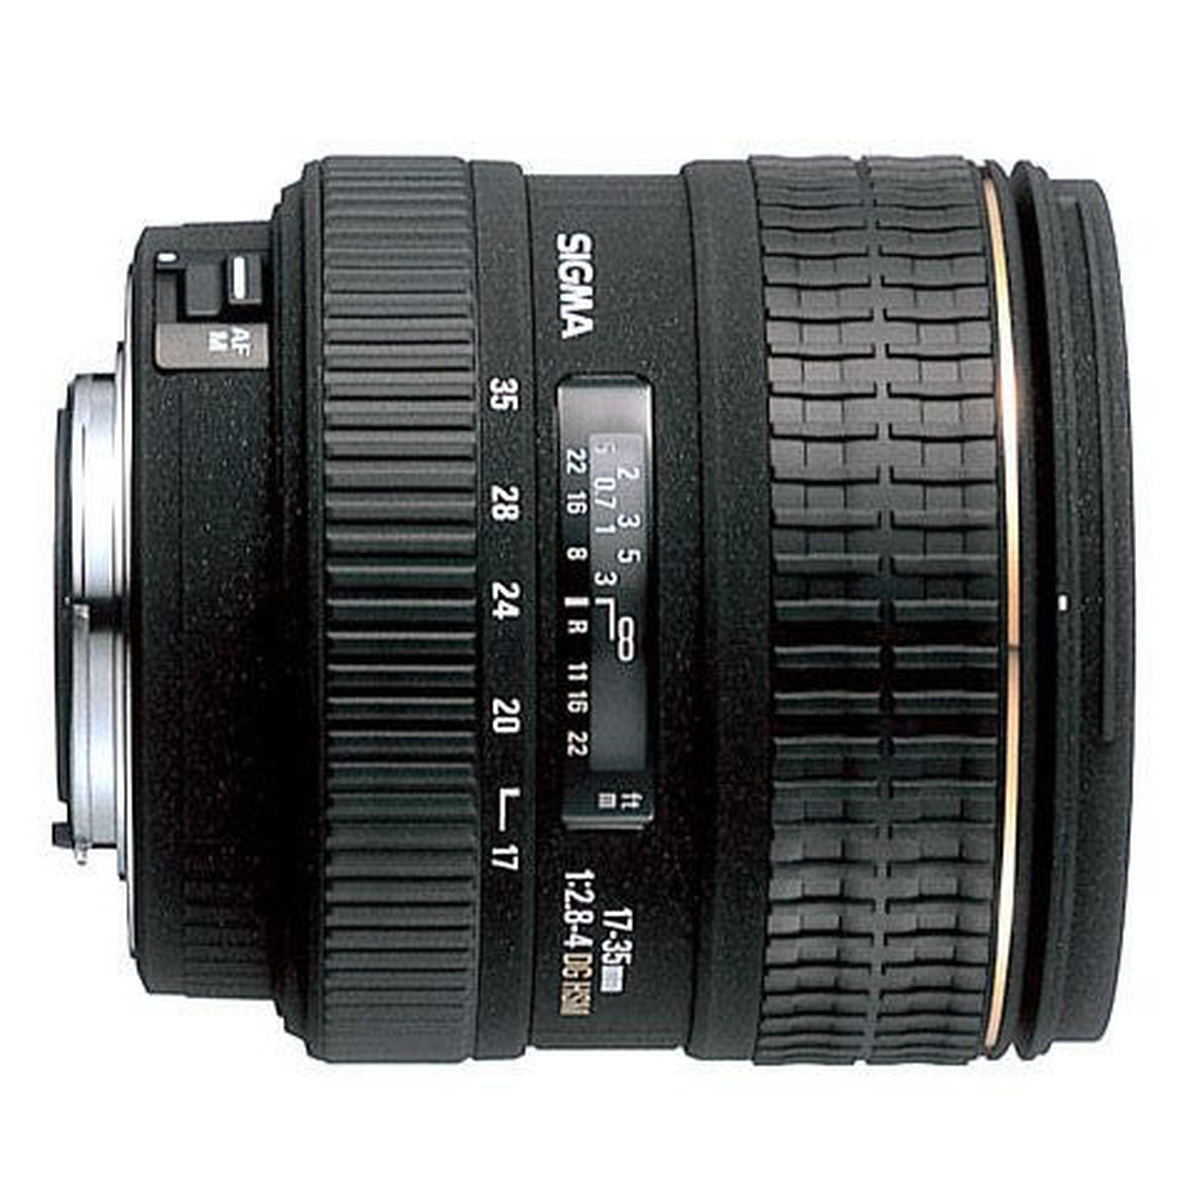 Sigma 17-35mm f/2.8-4 EX DG HSM : Caratteristiche e Opinioni | JuzaPhoto